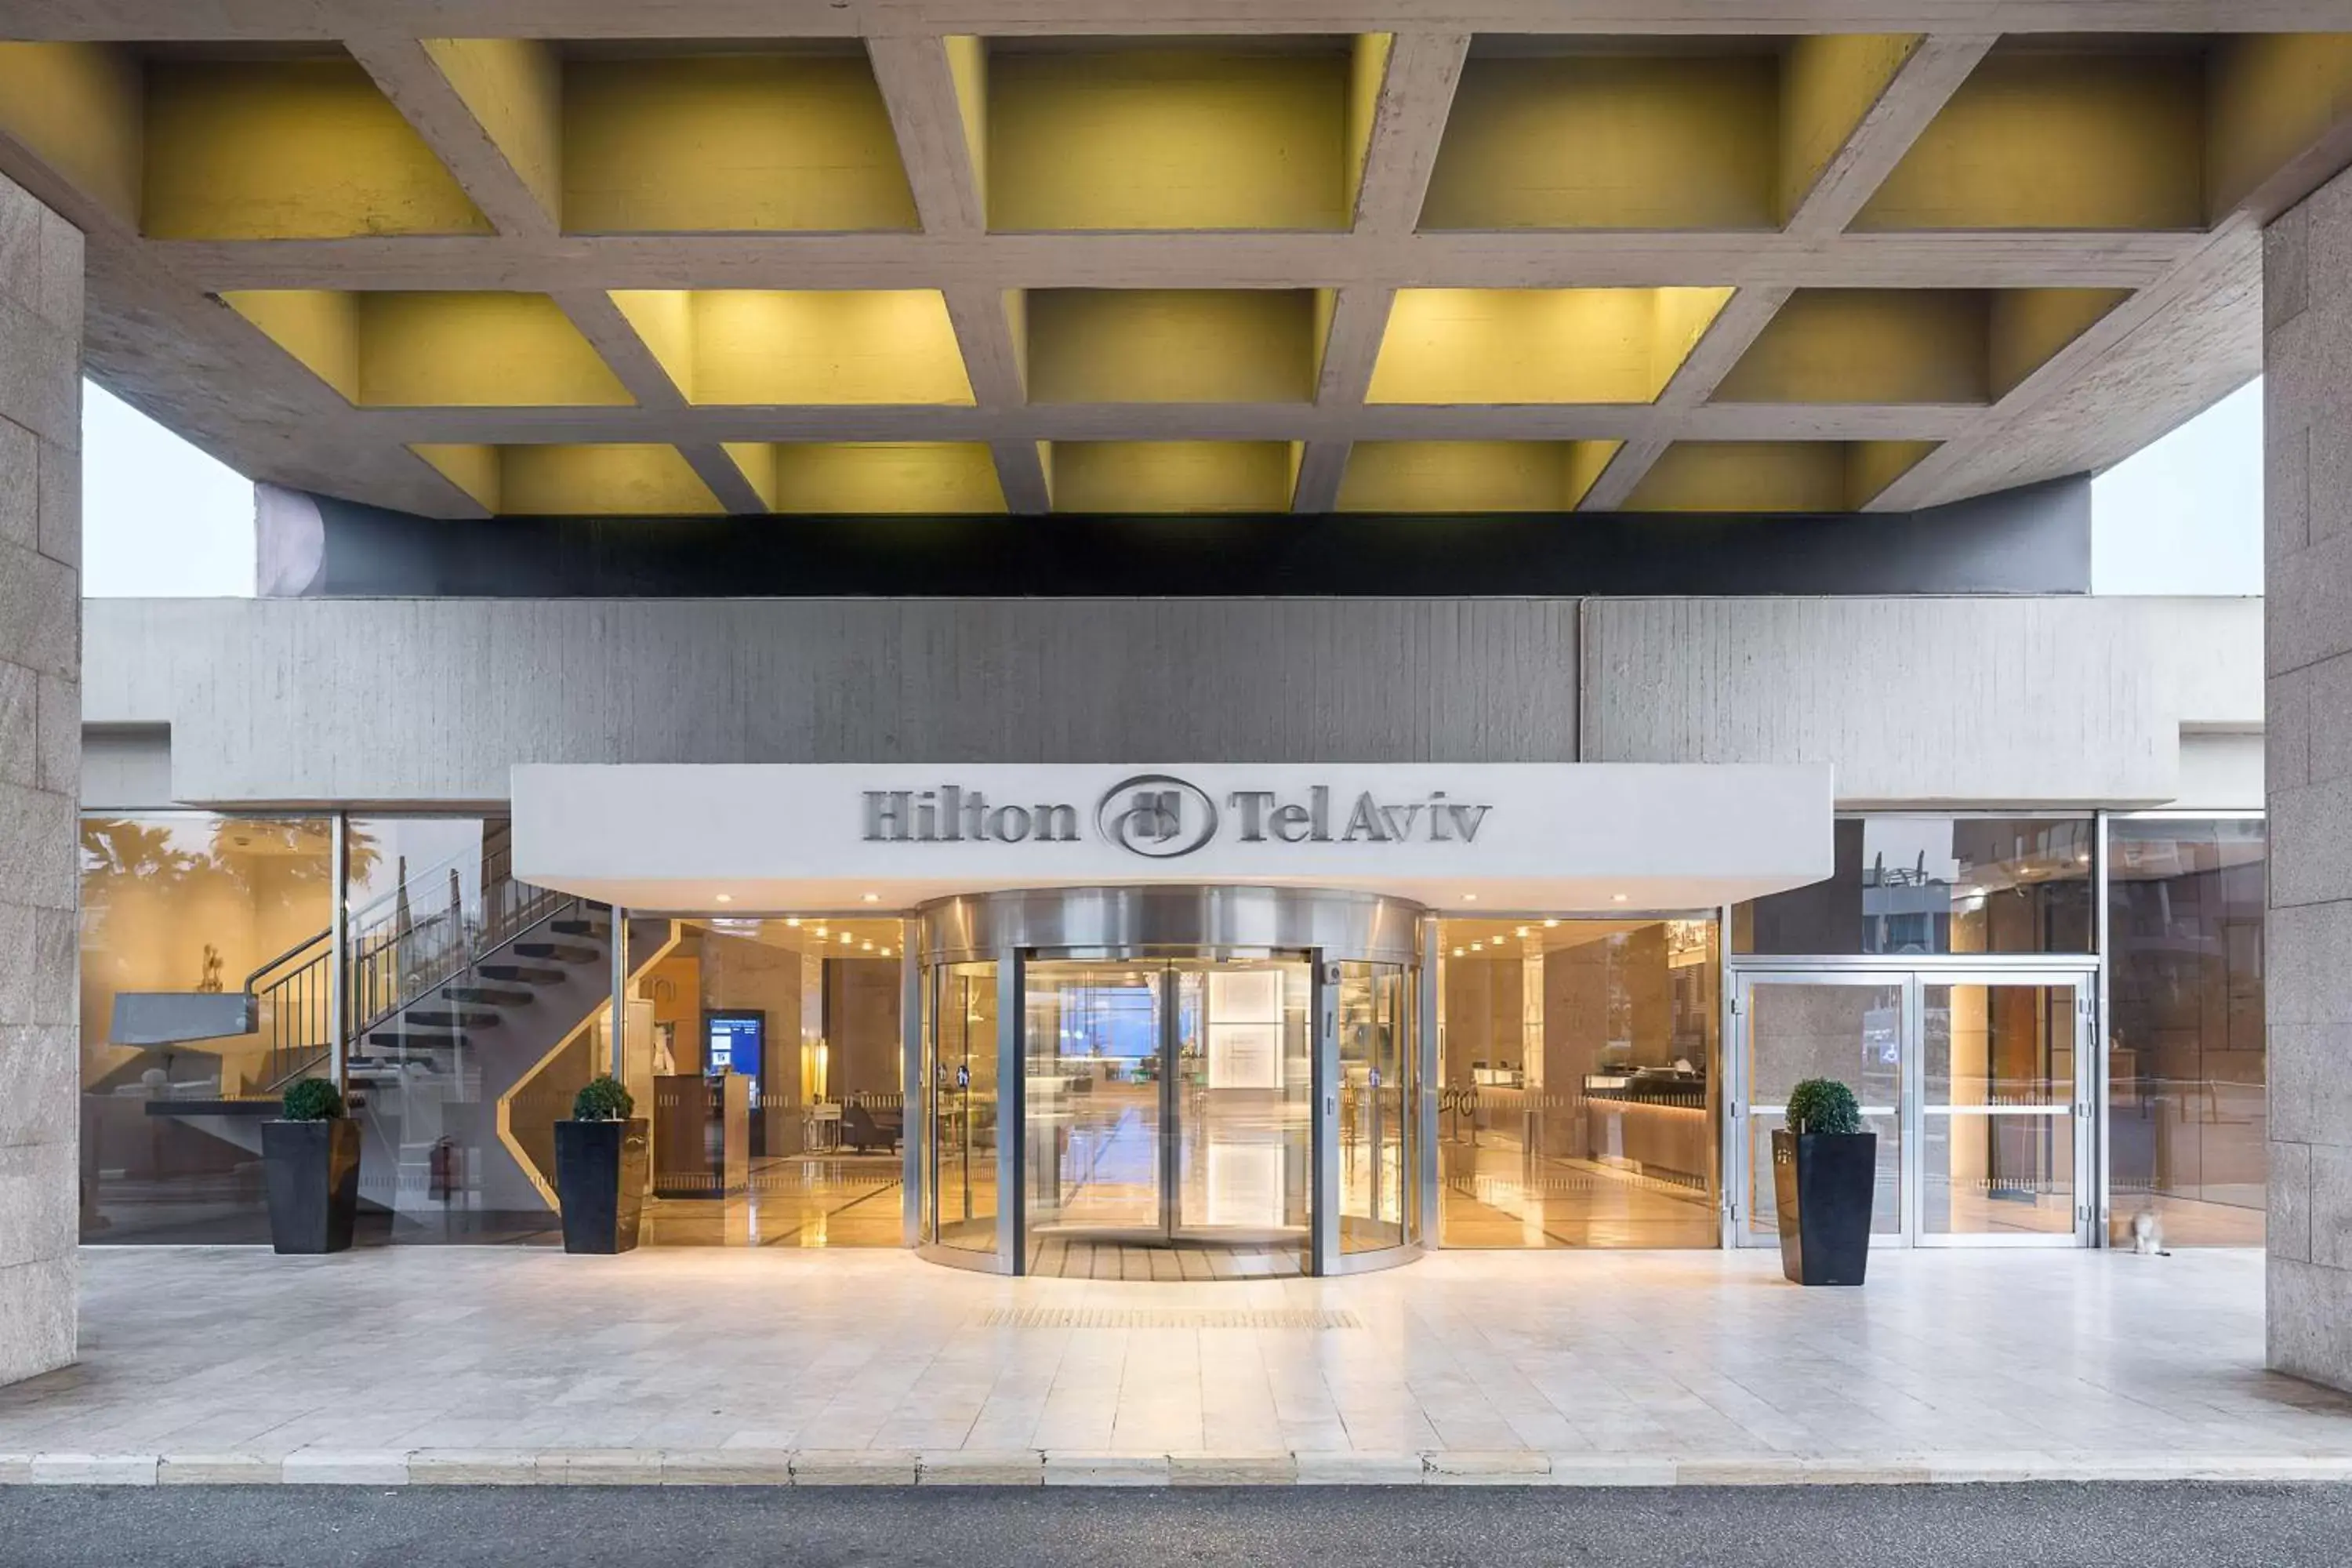 Lobby or reception in Hilton Tel Aviv Hotel